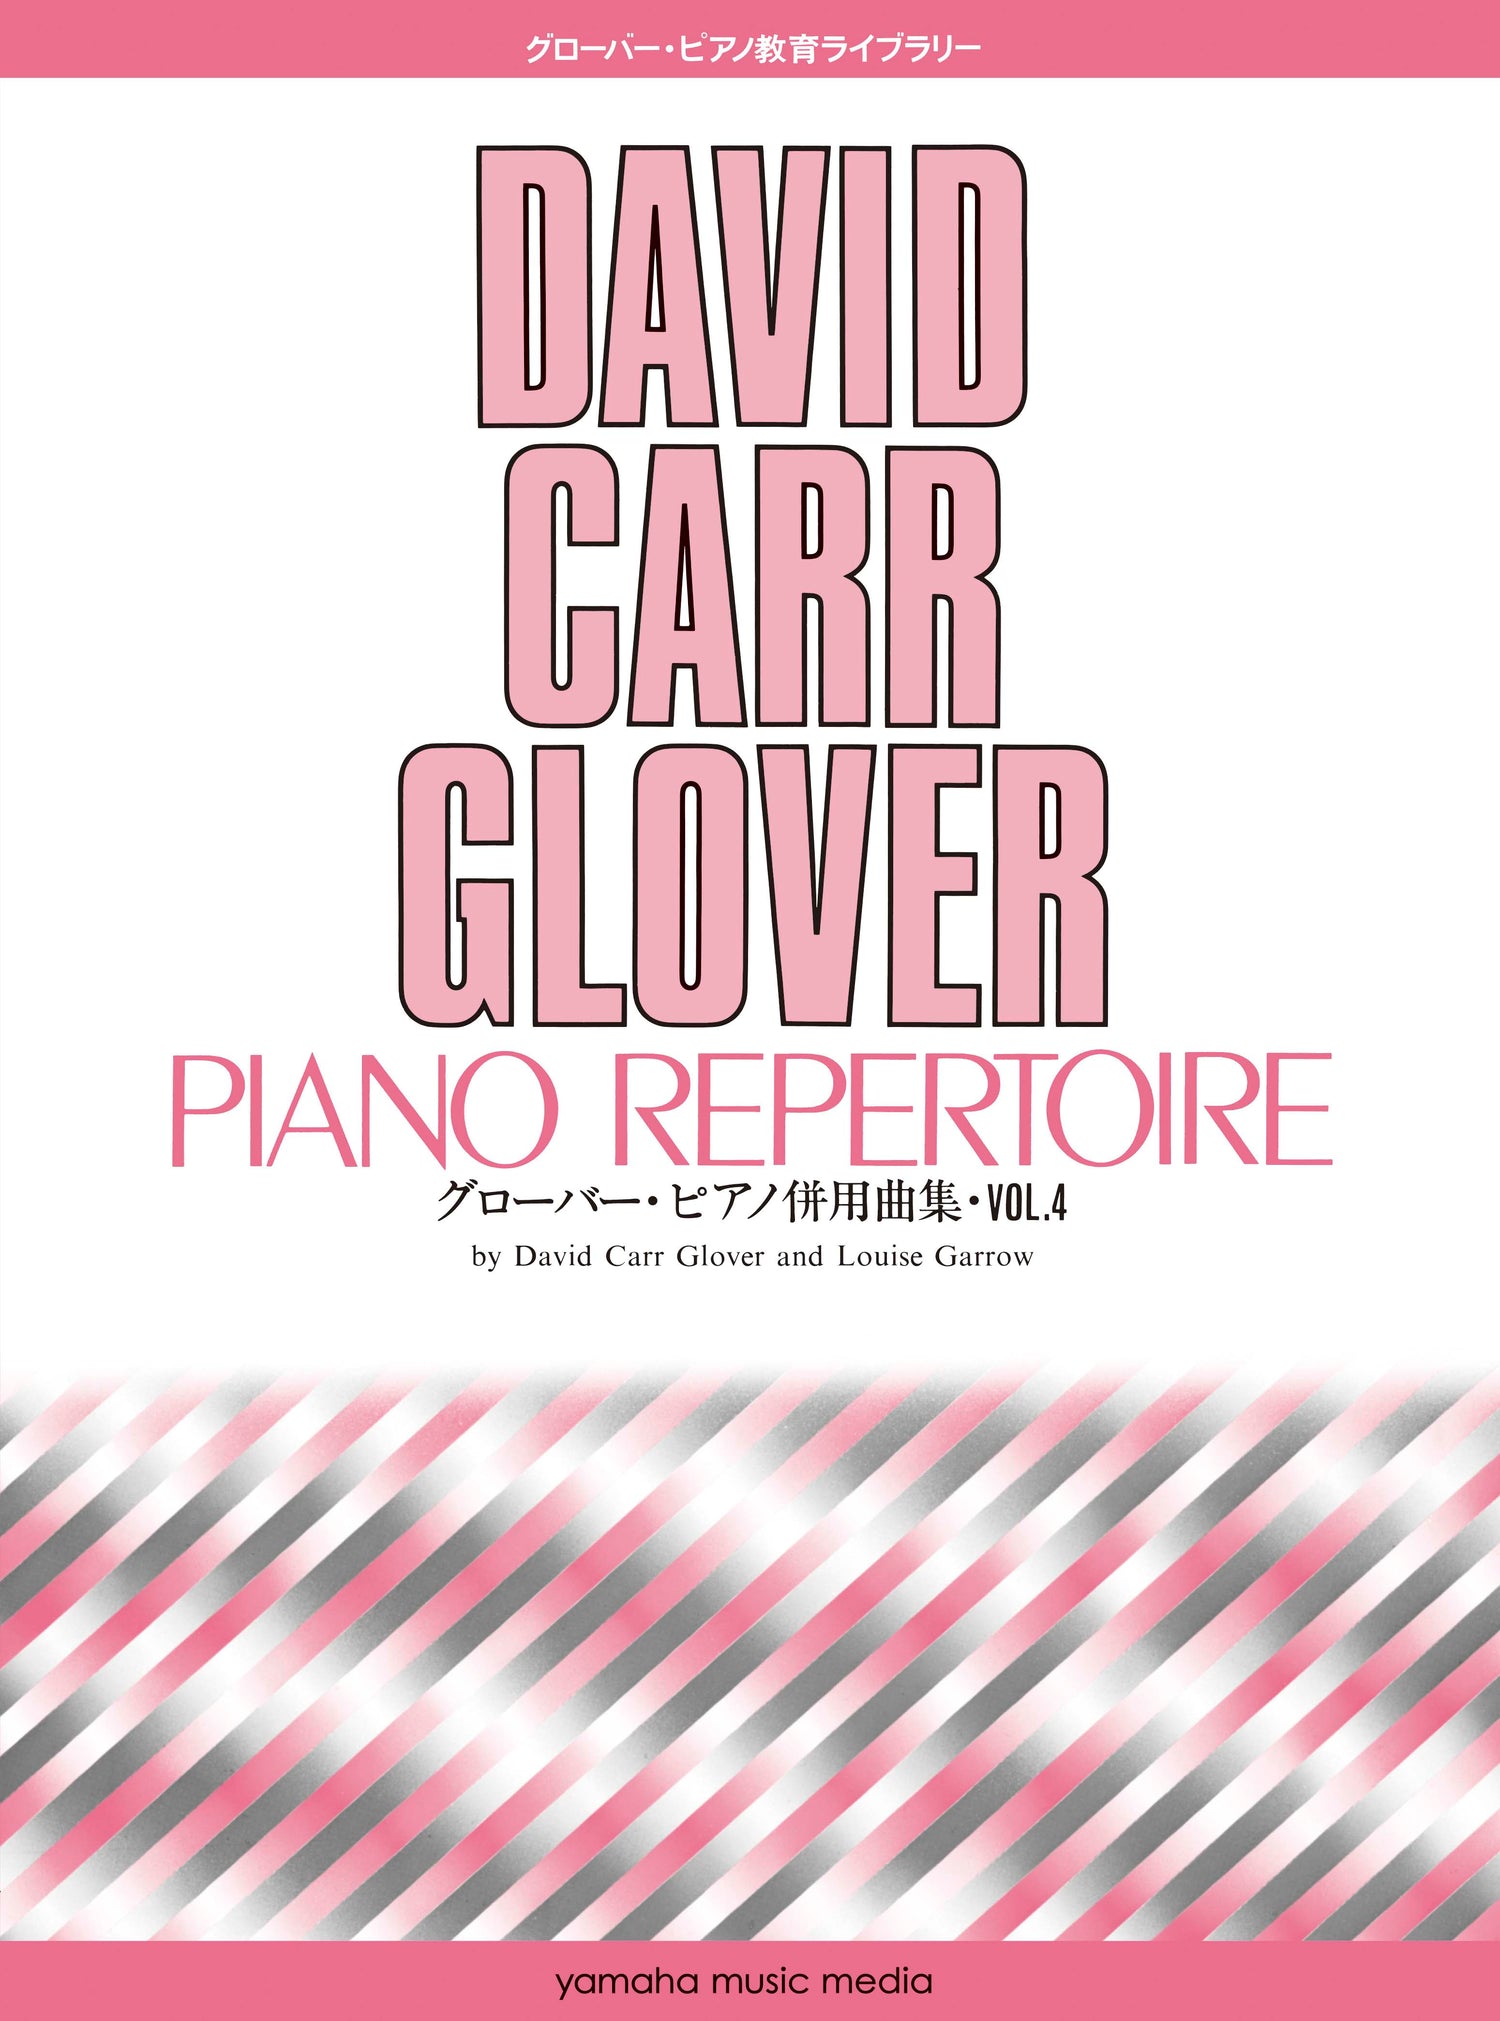 グローバー・ピアノ教育ライブラリー グローバー・ピアノ併用曲集 Vol.4